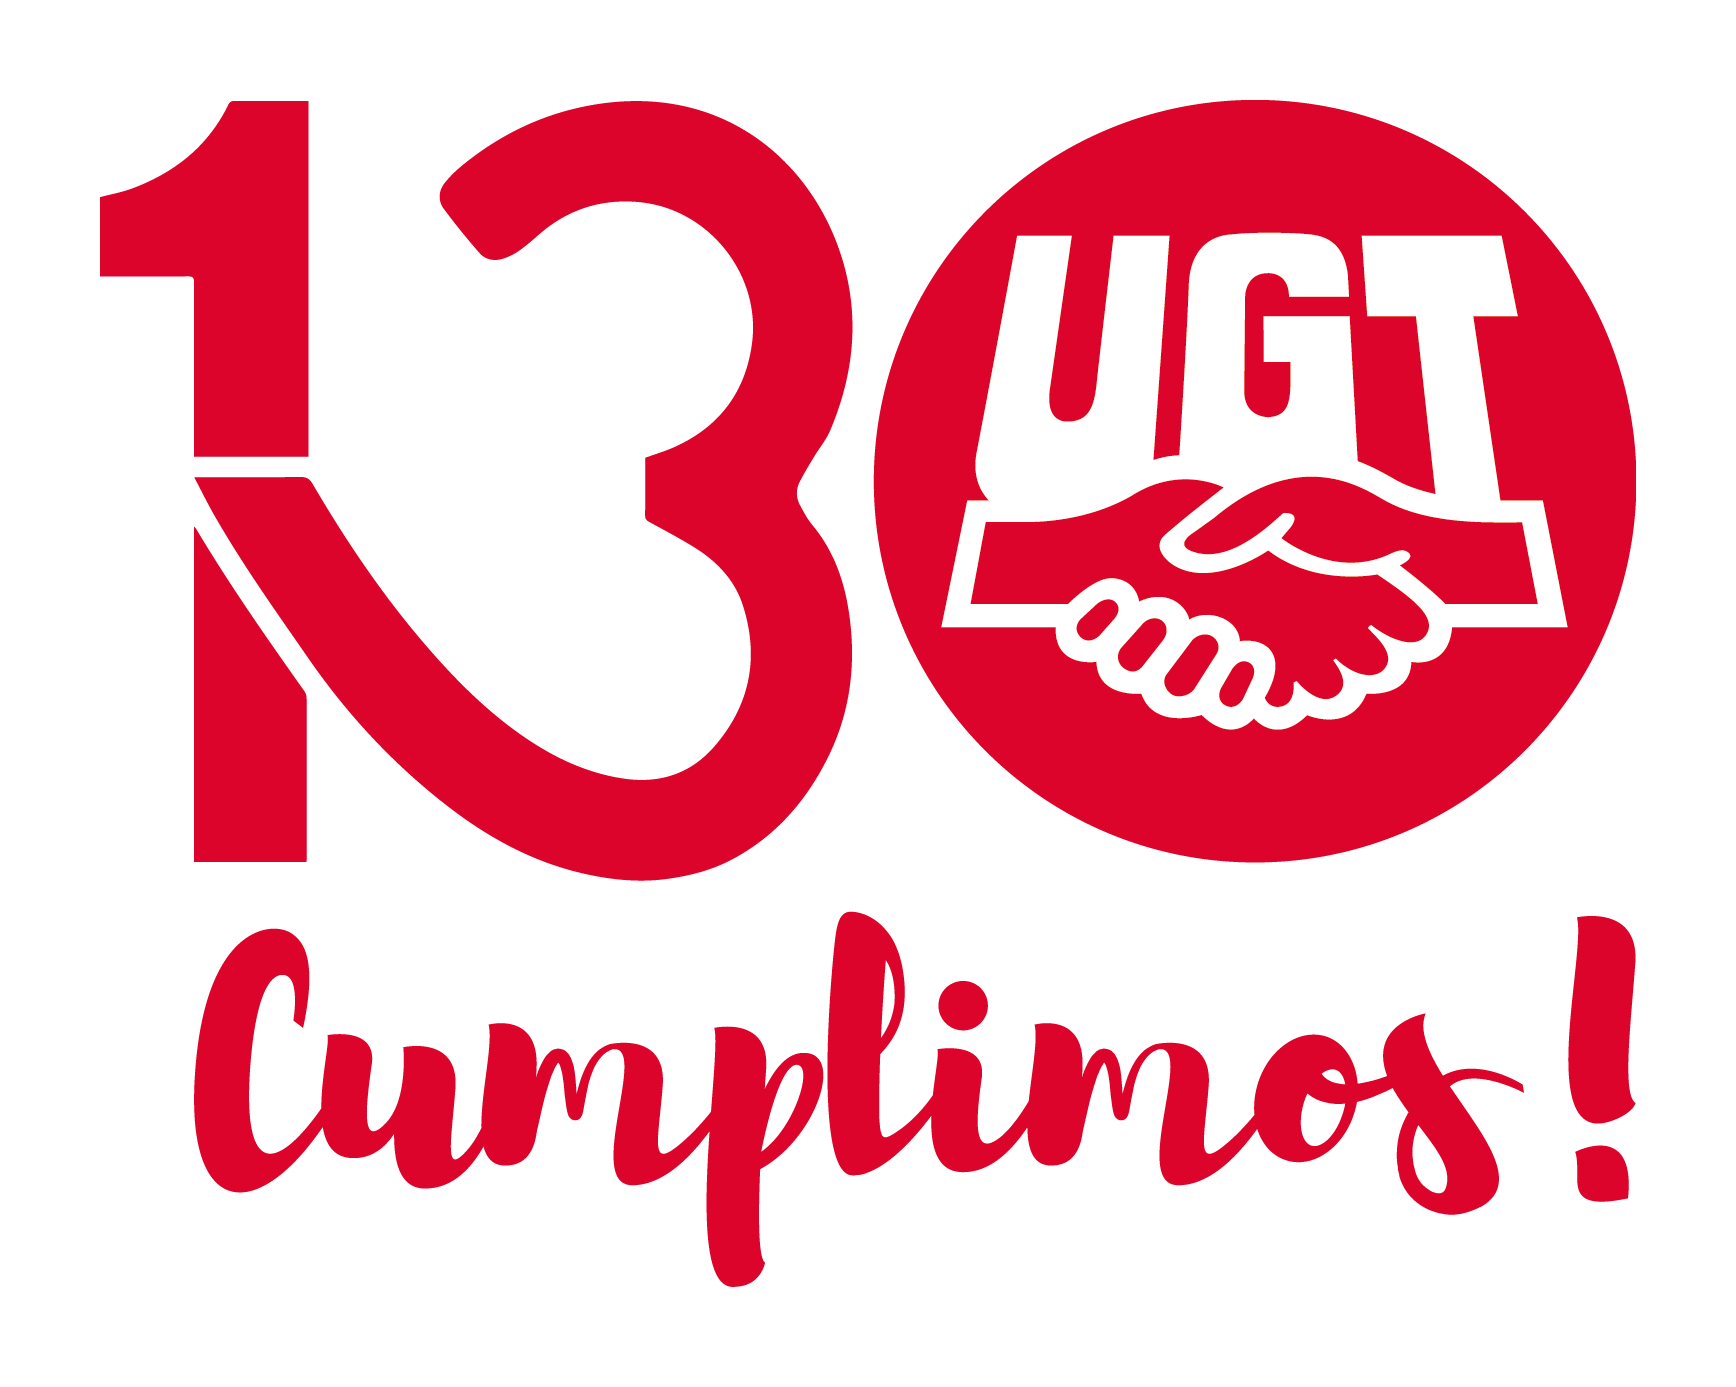 130 Aniversario de UGT